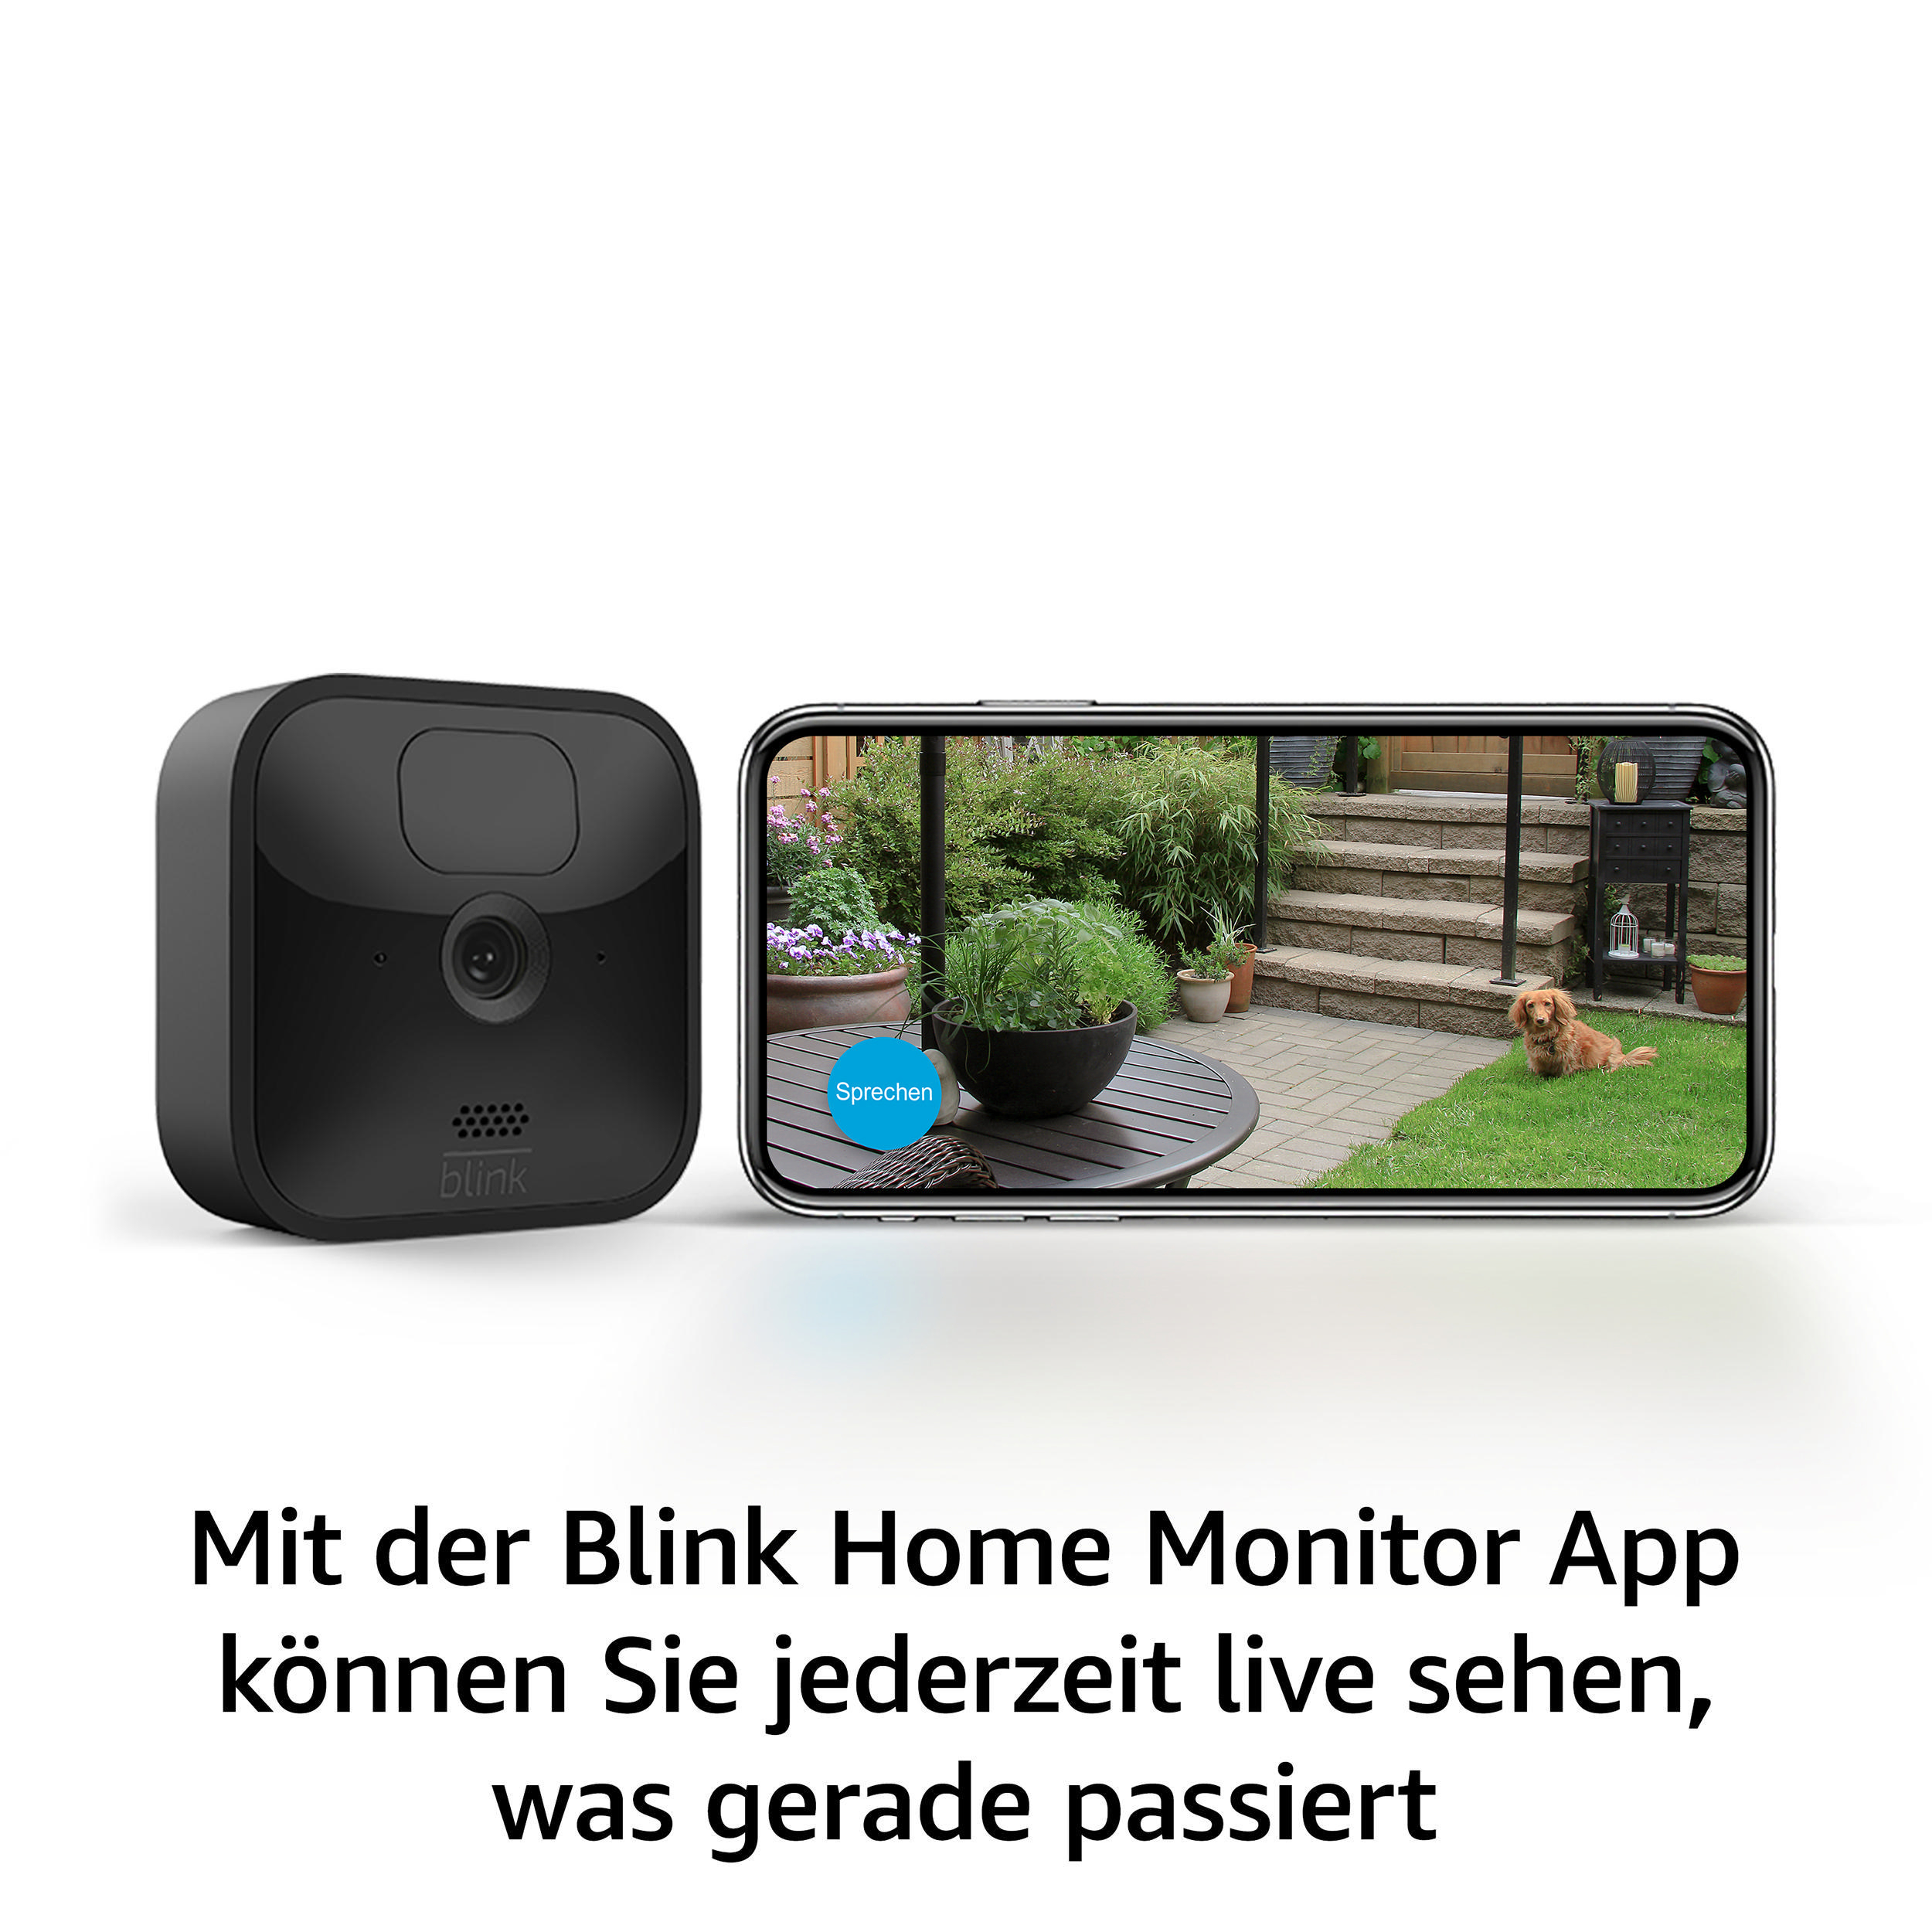 BLINK Outdoor 3 System, Überwachungskamera Kamera